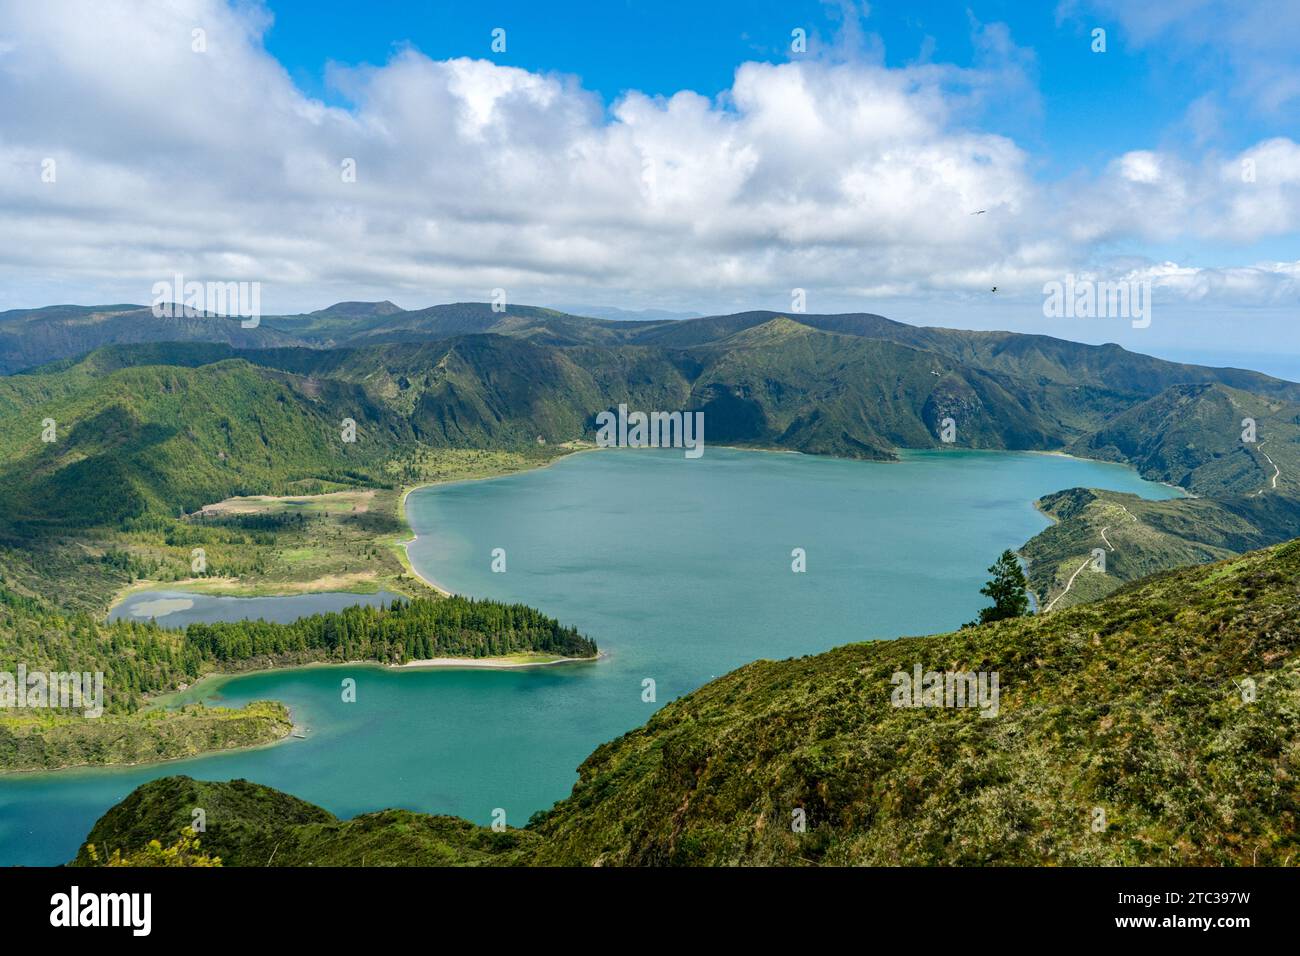 Die Lagune der Sieben Städte auf den Azoren ist ein Spektakel der Ruhe und Schönheit, wo das blaue Wasser mit dem üppigen Grün der vulkanischen Hänge verschmilzt. Stockfoto